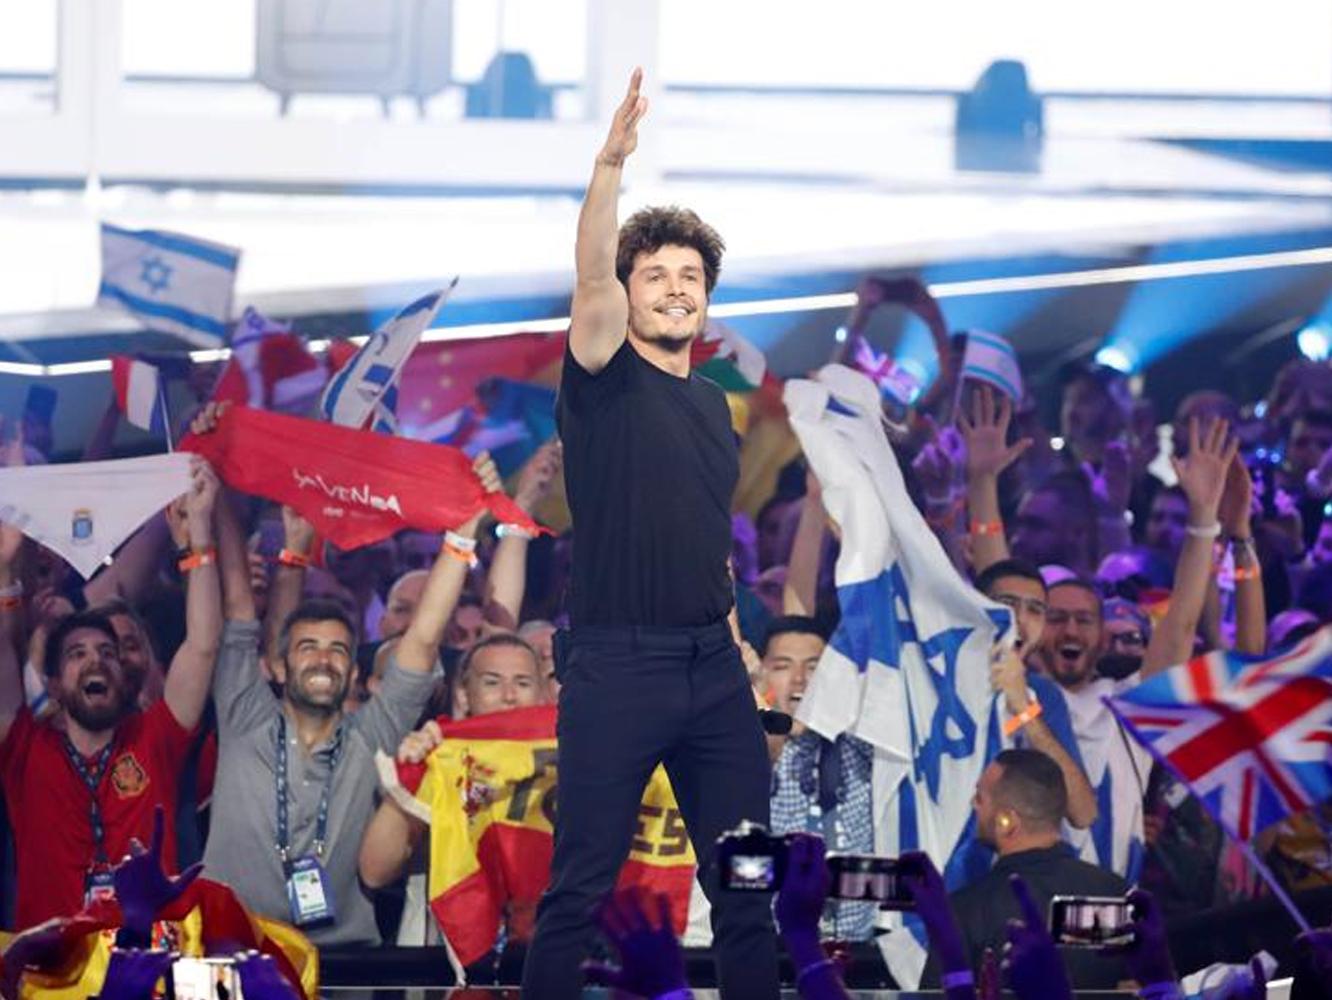  Europa ciega a Miki y ‘La Venda’ cae hasta el 22 en Eurovisión